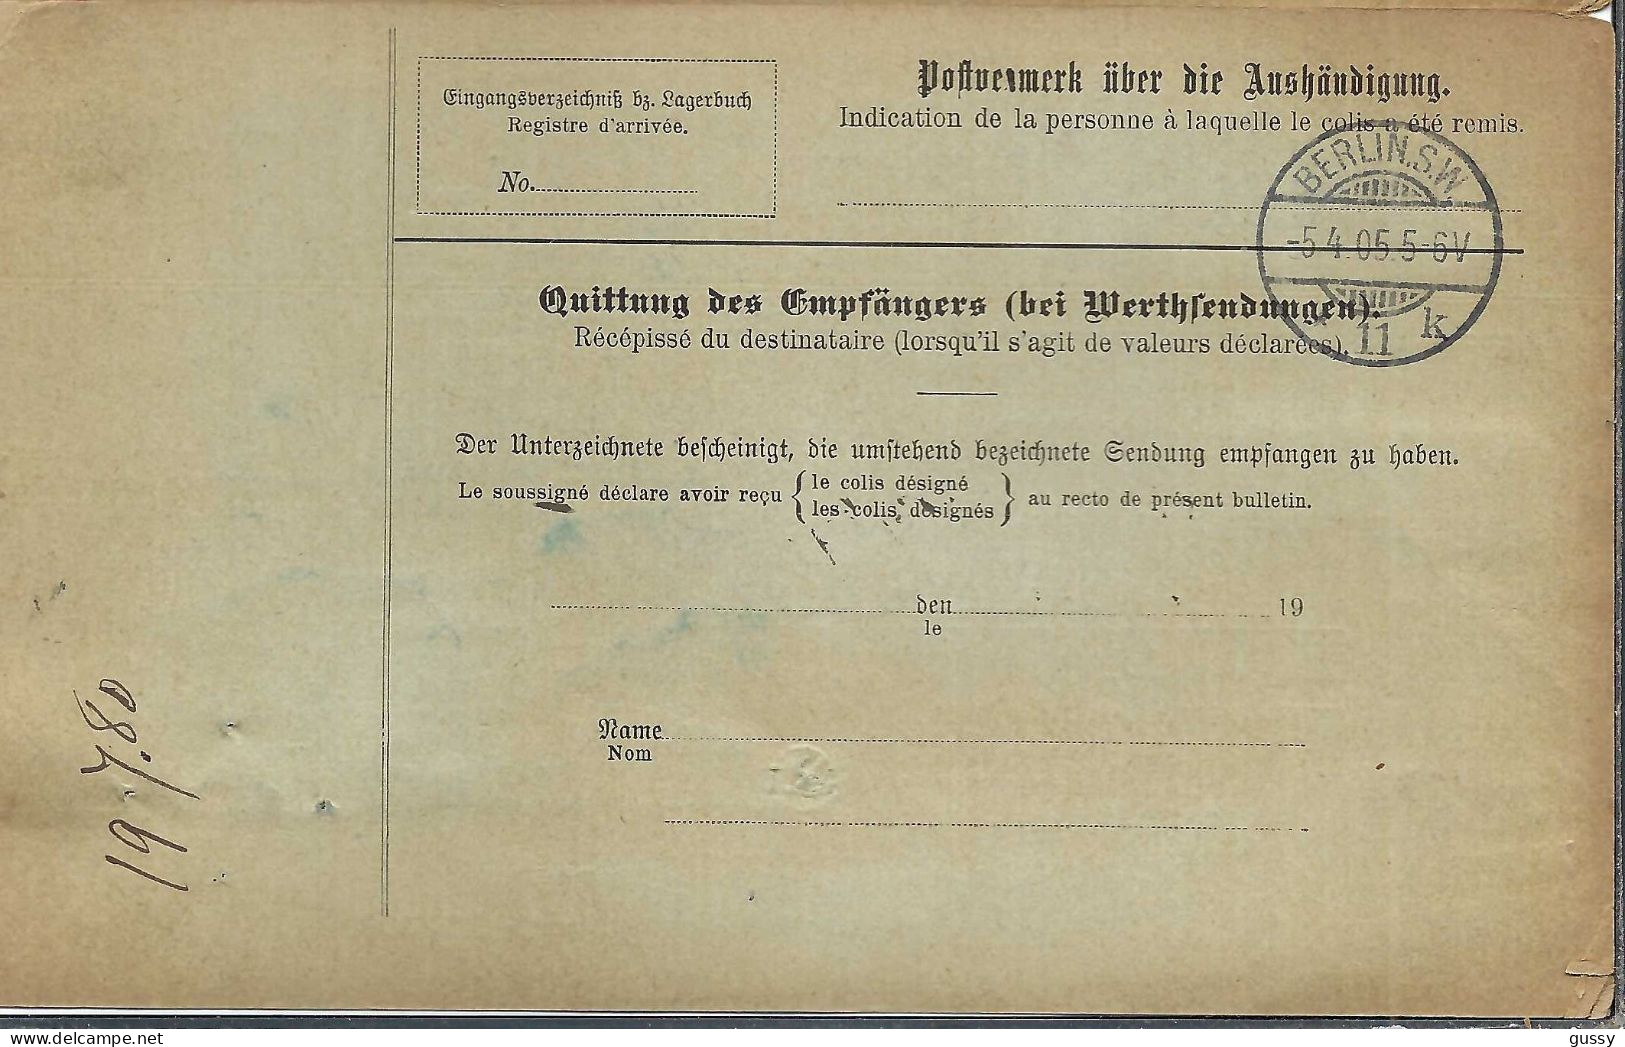 ALLEMAGNE Ca.1905: Bulletin D'Expédition CR De Berlin Pour Genève (Suisse) - Covers & Documents